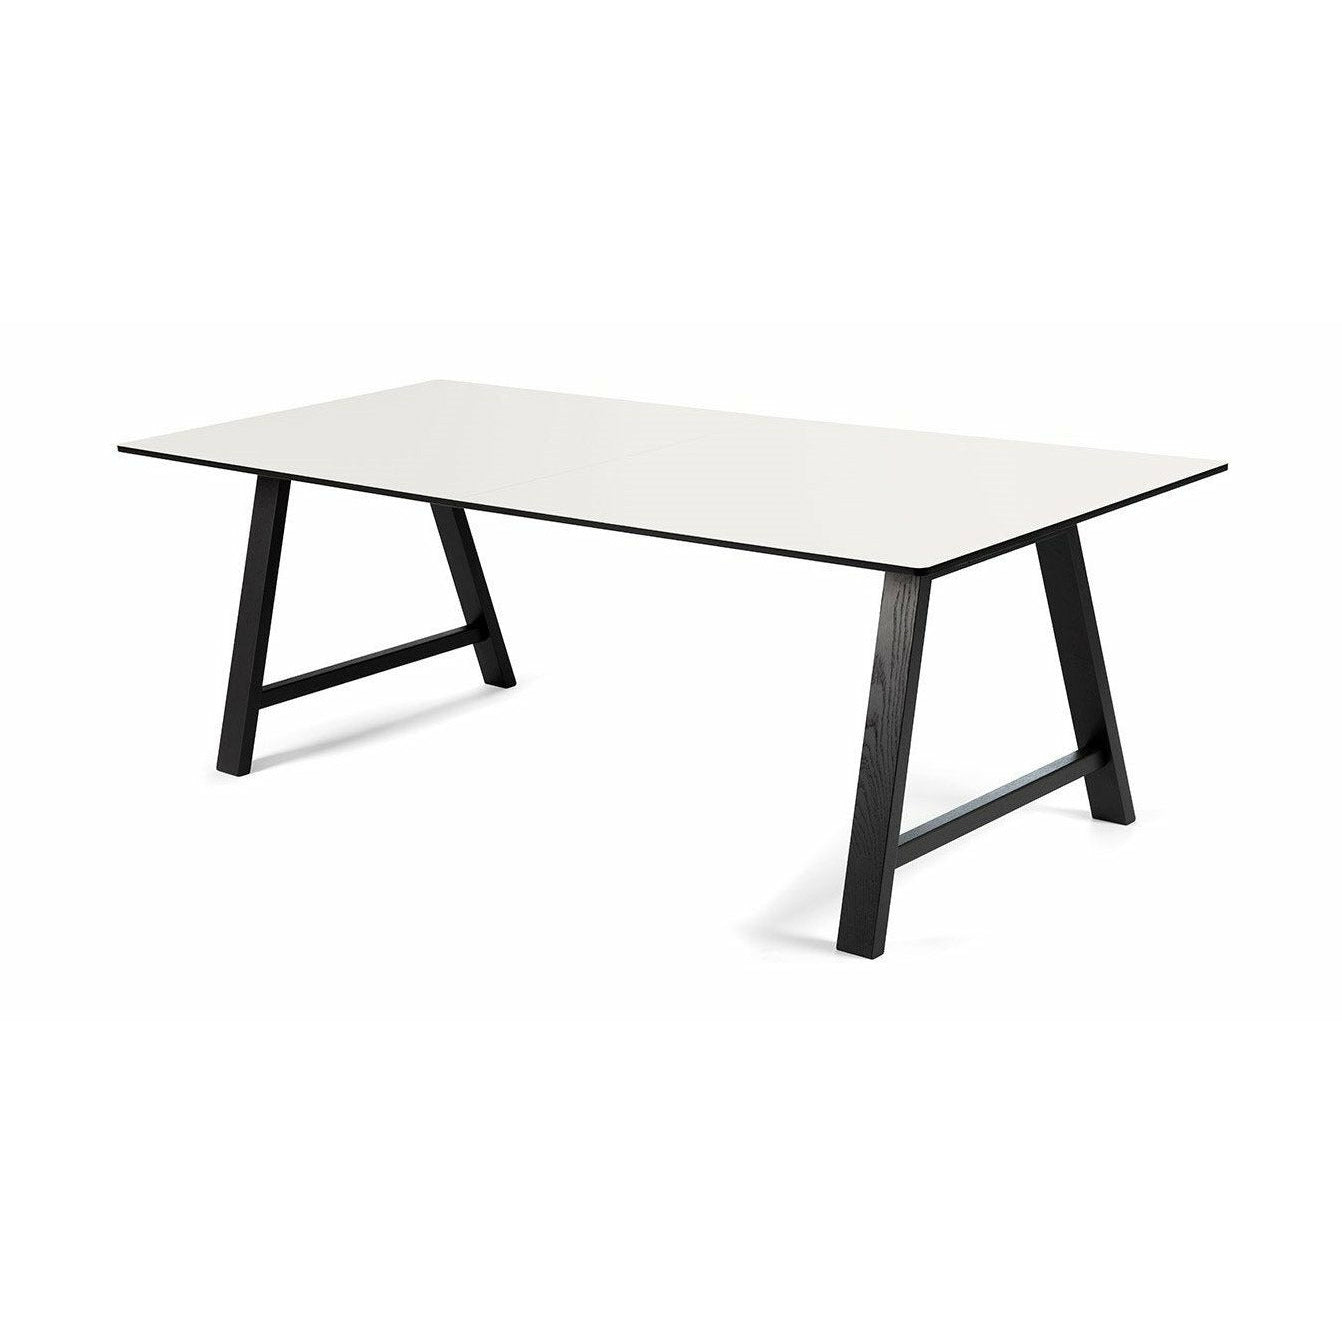 Andersen Möbel T1 Exciptable Tisch, weißer Laminat, schwarzer Rahmen, 180 cm